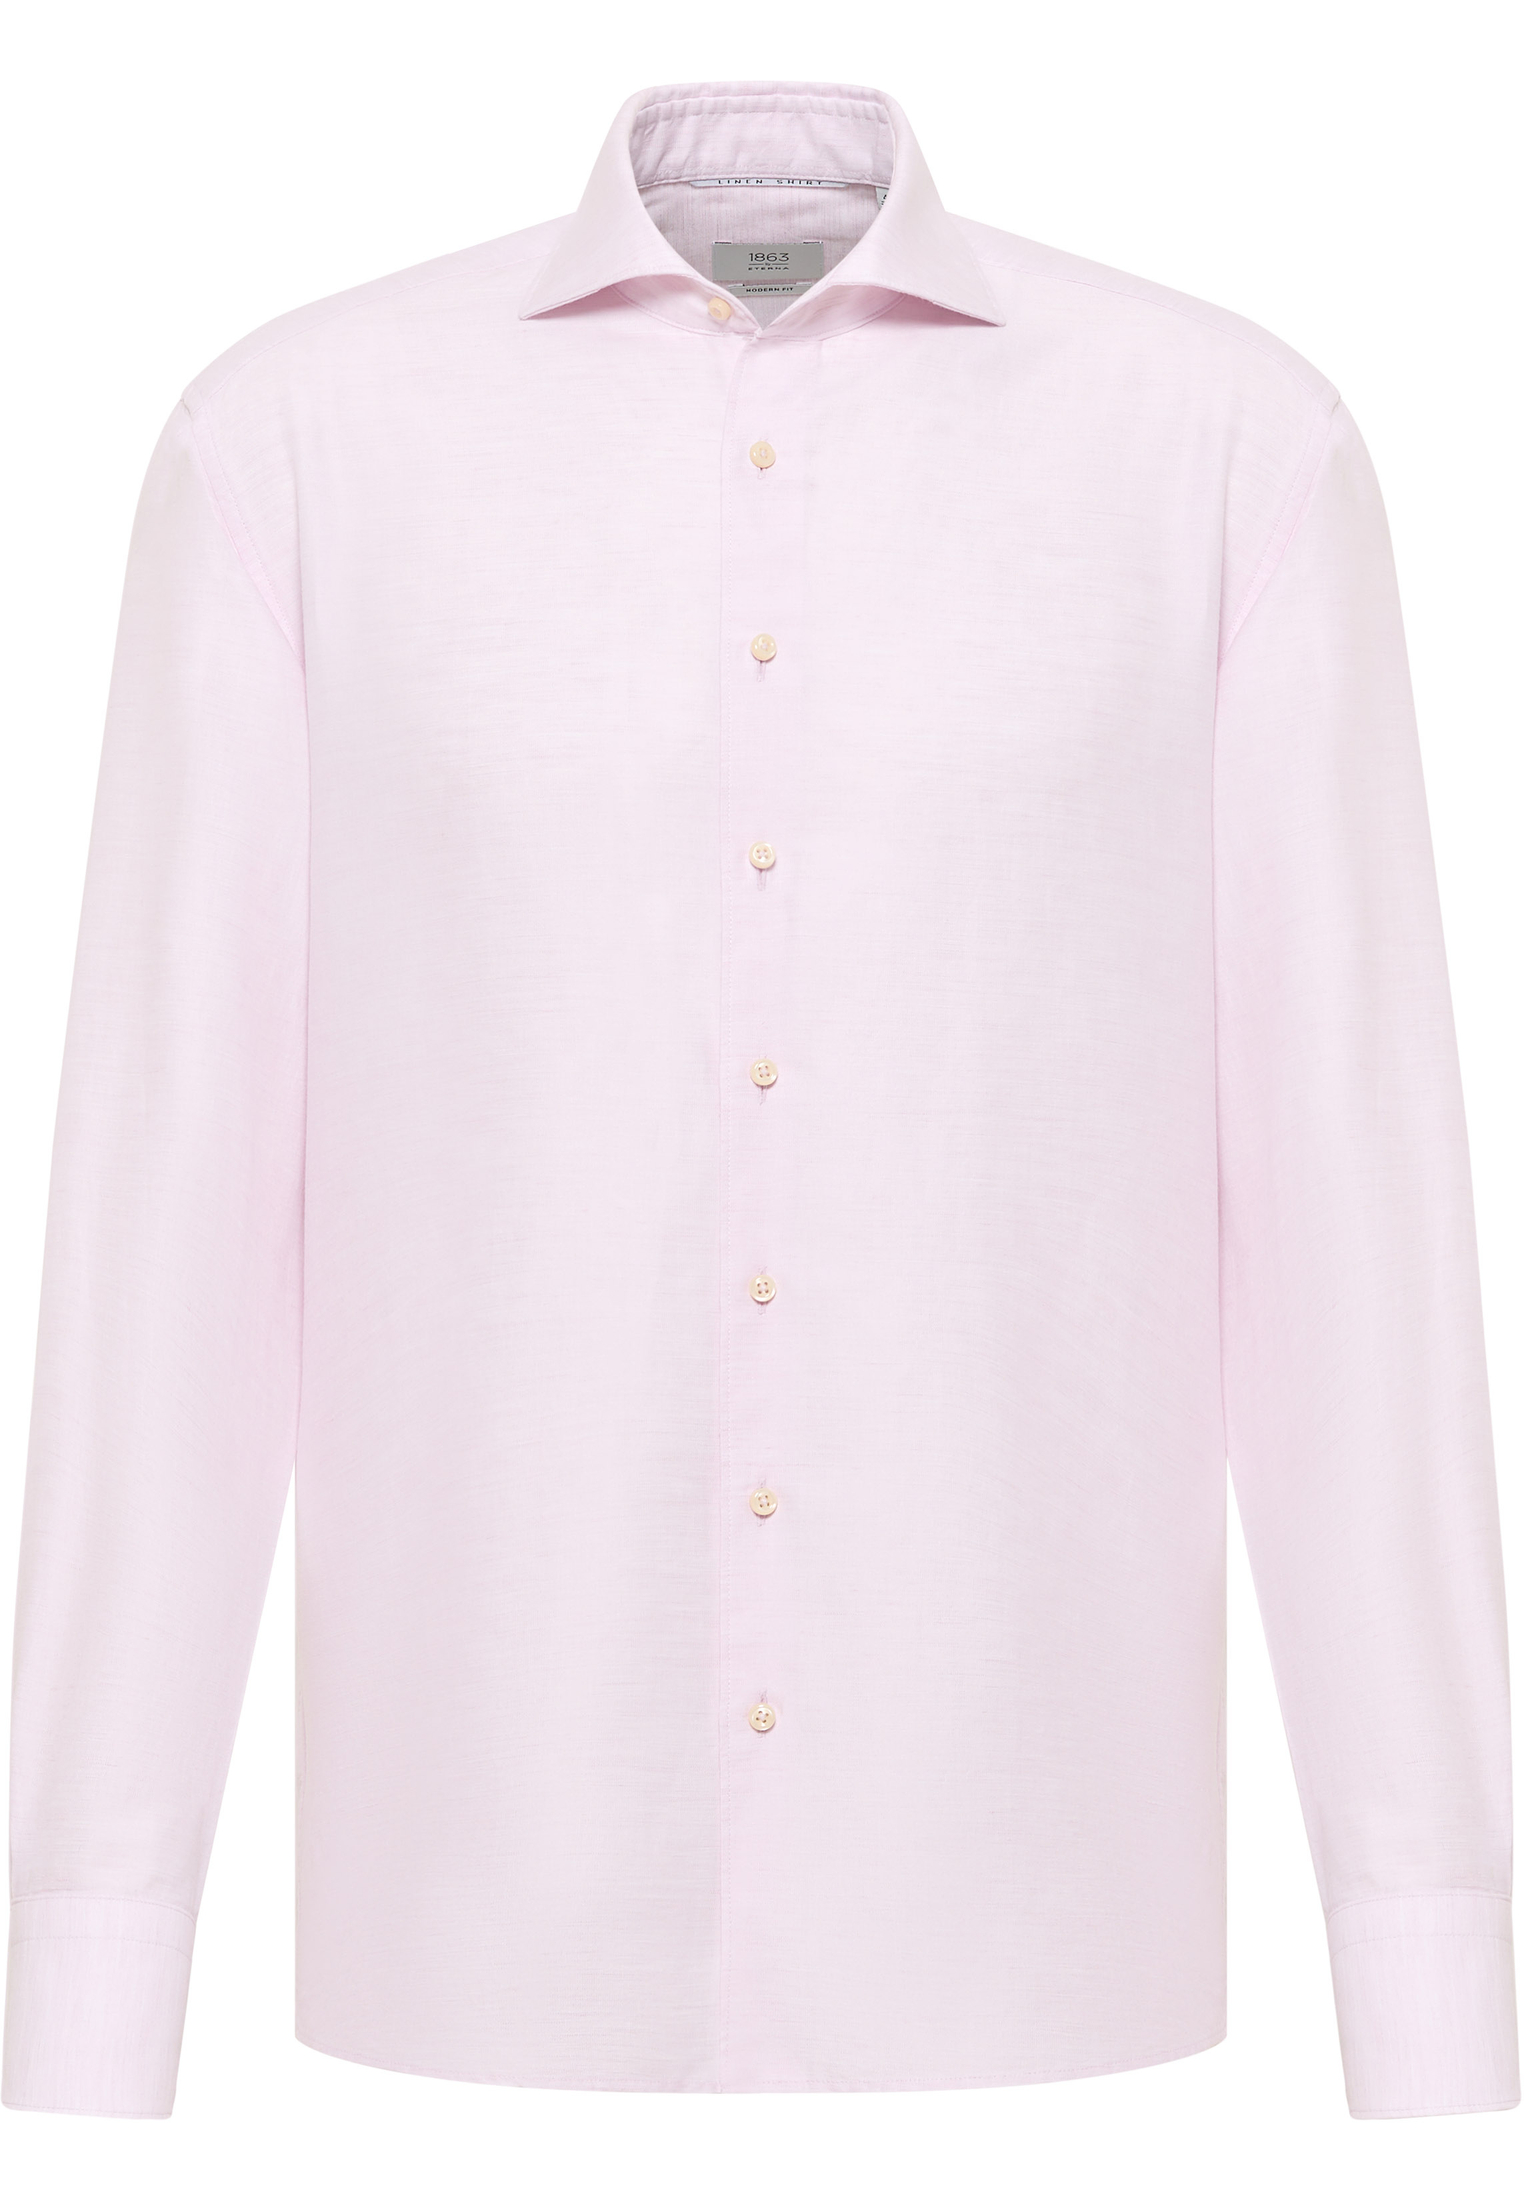 MODERN FIT Linen Shirt in rose plain